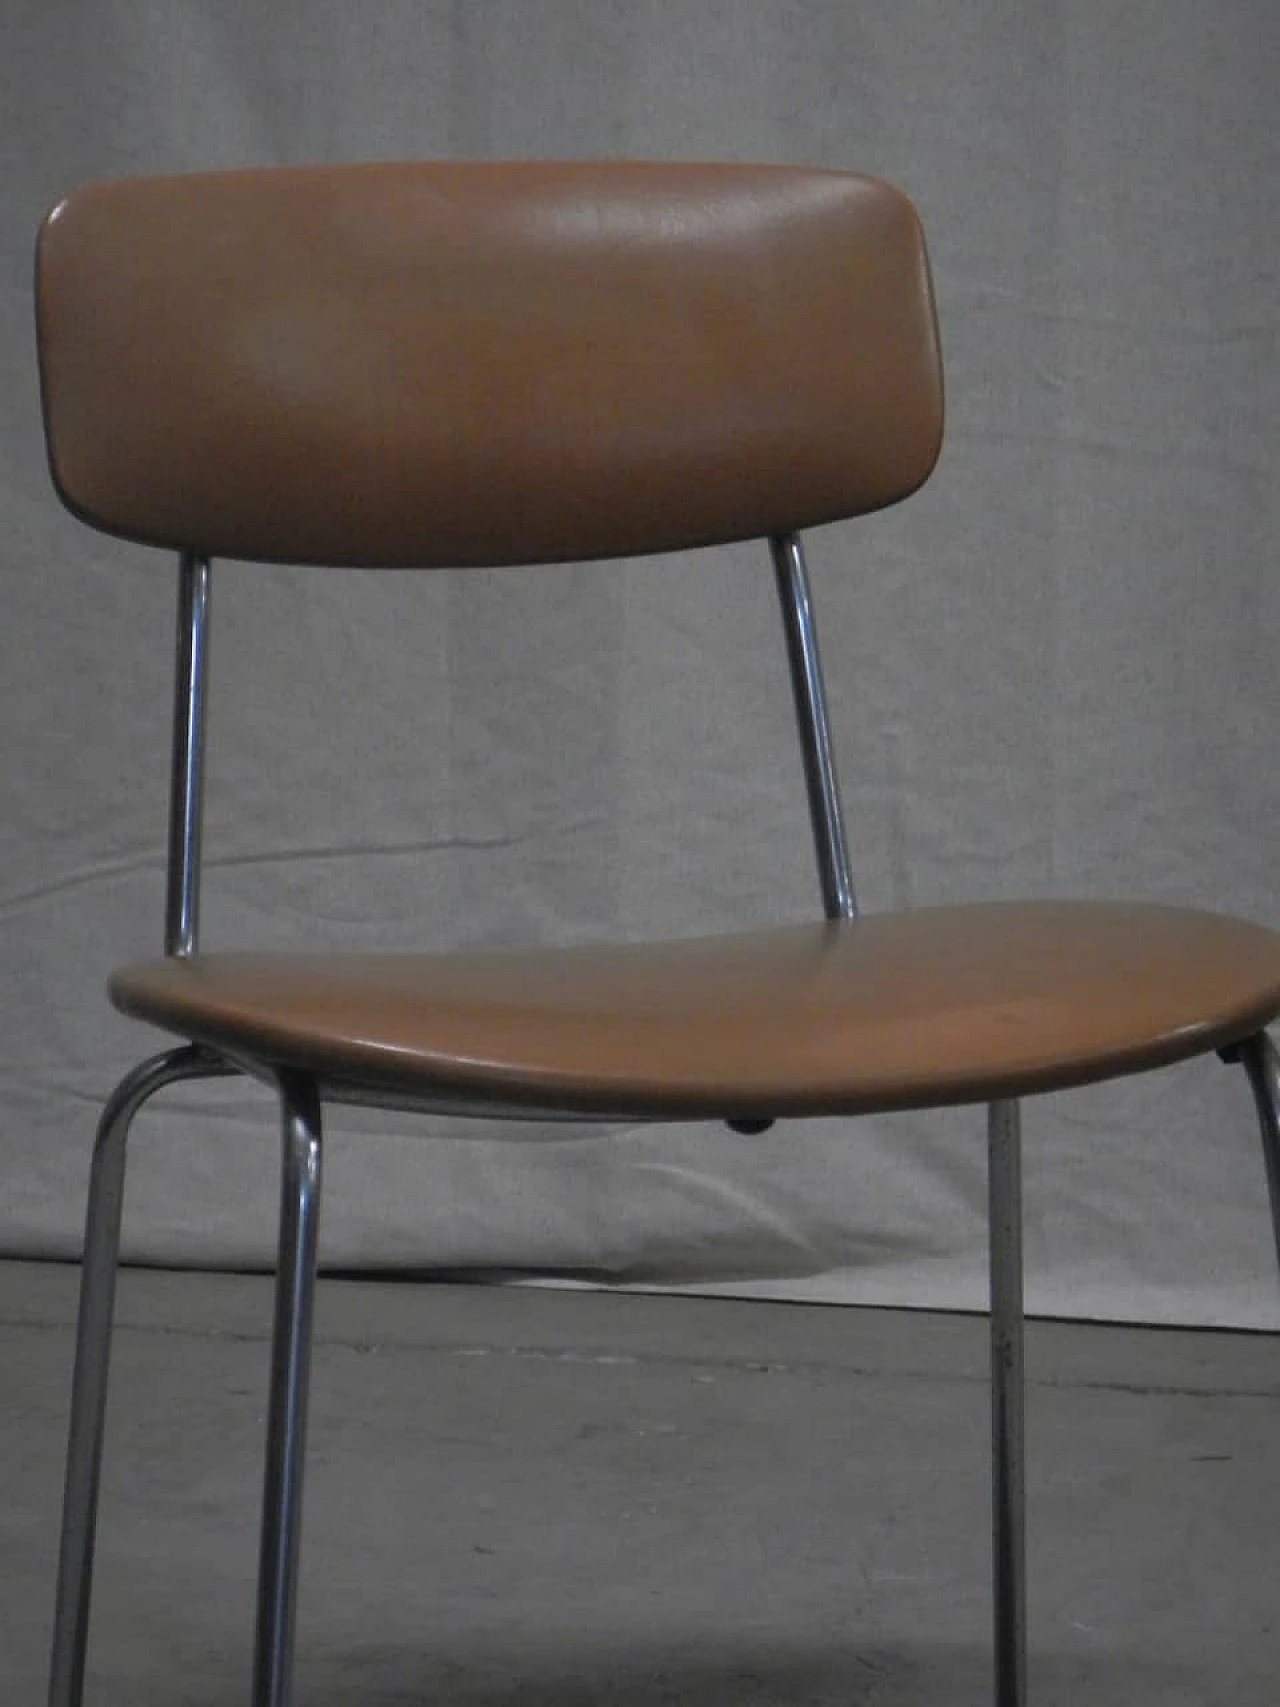 6 skai chairs, '70s 1062035